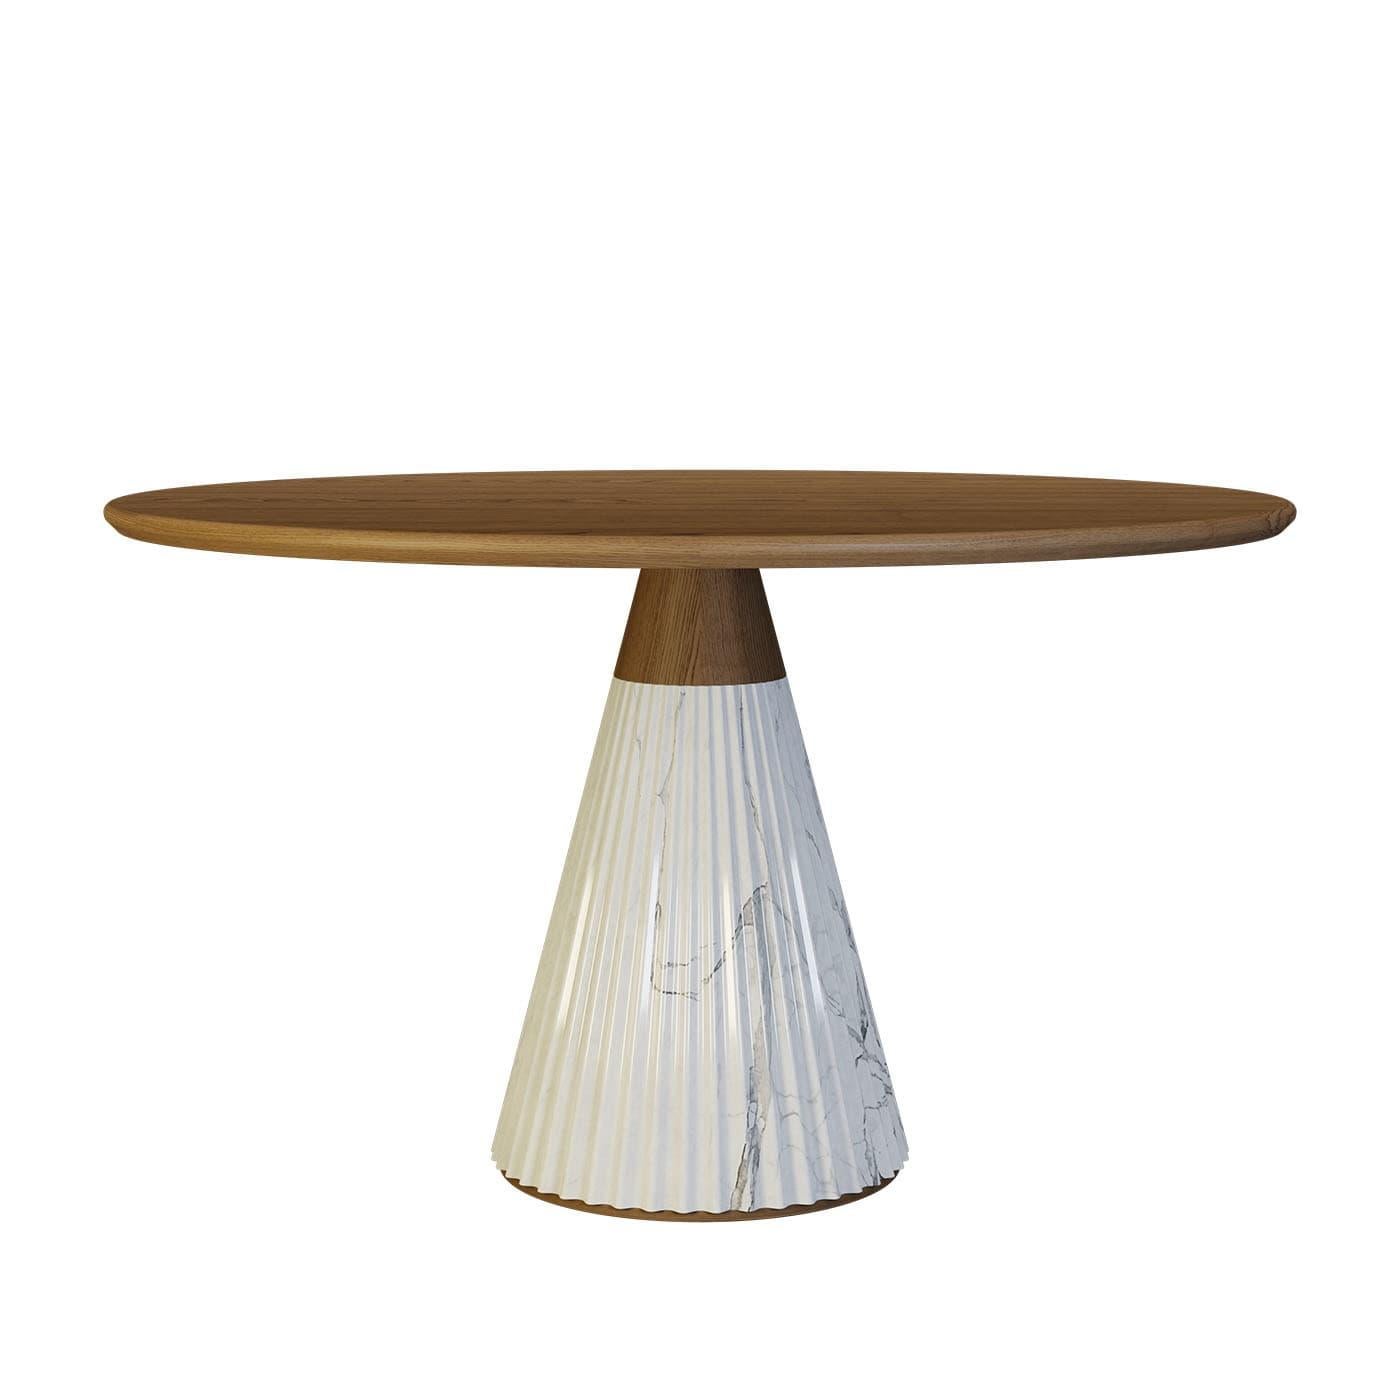 Design emblématique de la sophistication contemporaine, cette magnifique table ronde de Libero Rutilo ajoutera un accent raffiné et élégant à un salon ou à une salle à manger moderne. Fabriqué à la main en bois de frêne, le plateau rond repose sur